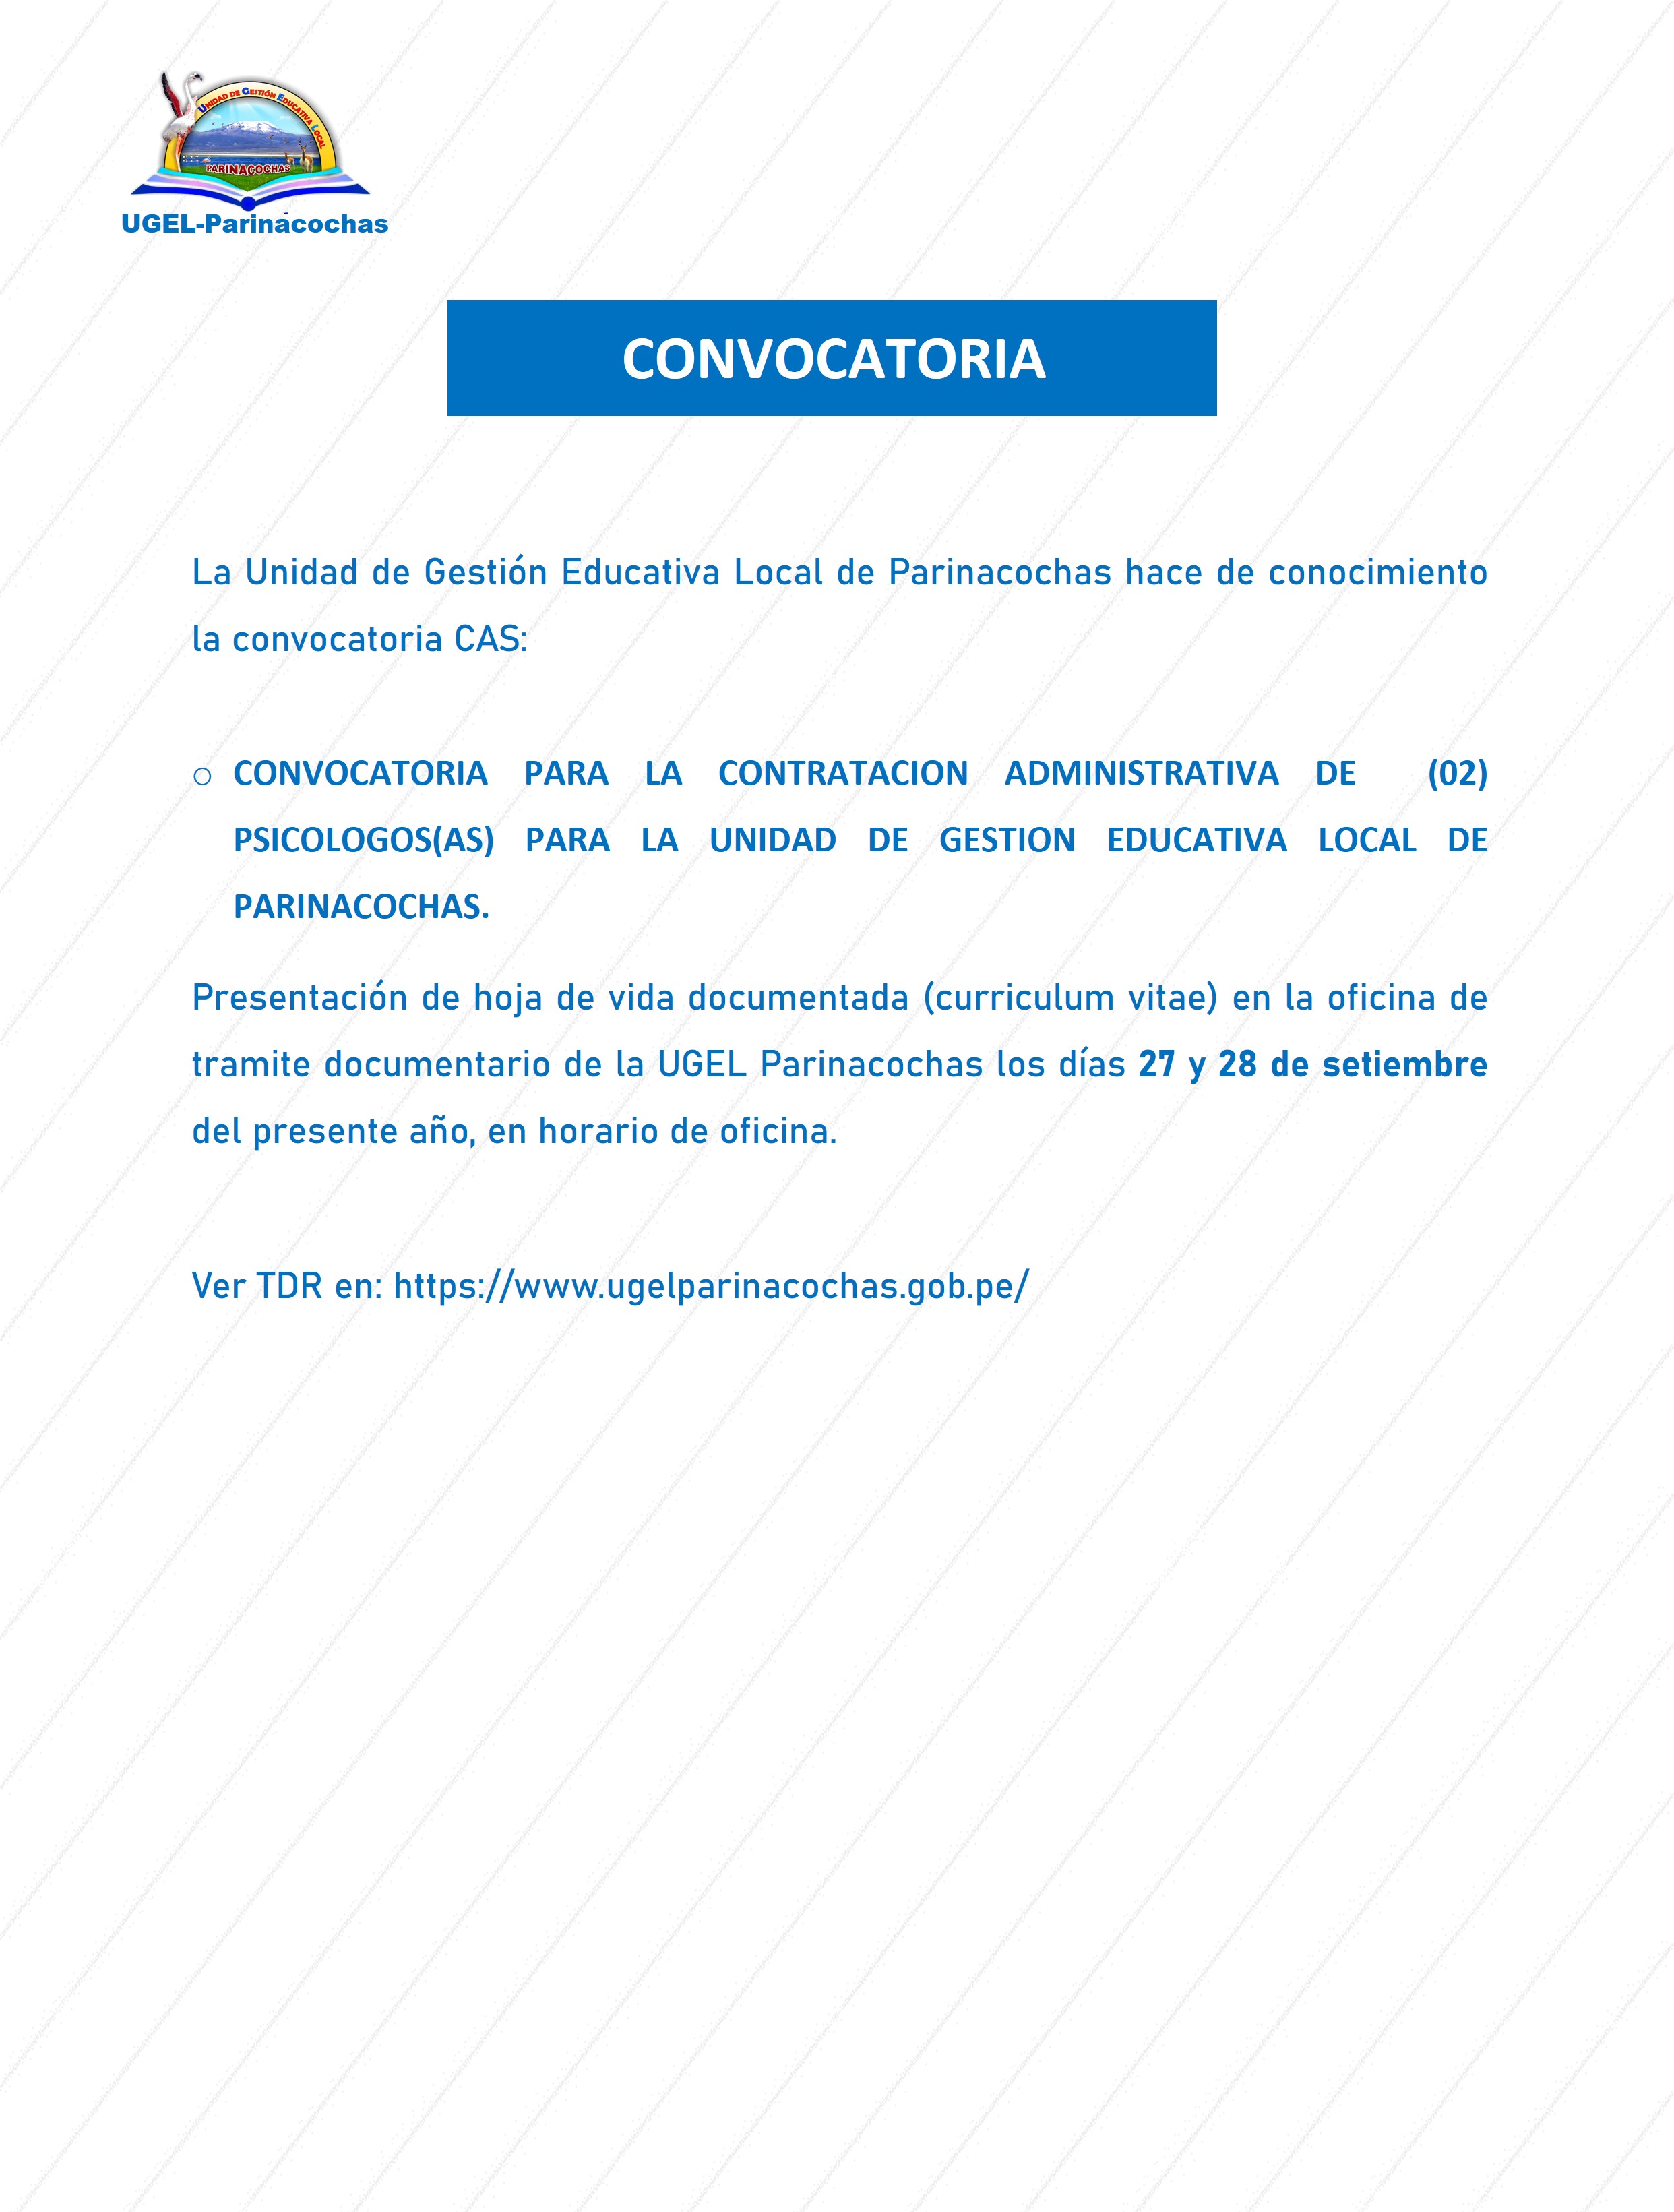 CONVOCATORIA PARA LA CONTRATACION ADMINISTRATIVA DE  (02) PSICOLOGOS(AS) PARA LA UNIDAD DE GESTION EDUCATIVA LOCAL DE PARINACOCHAS.